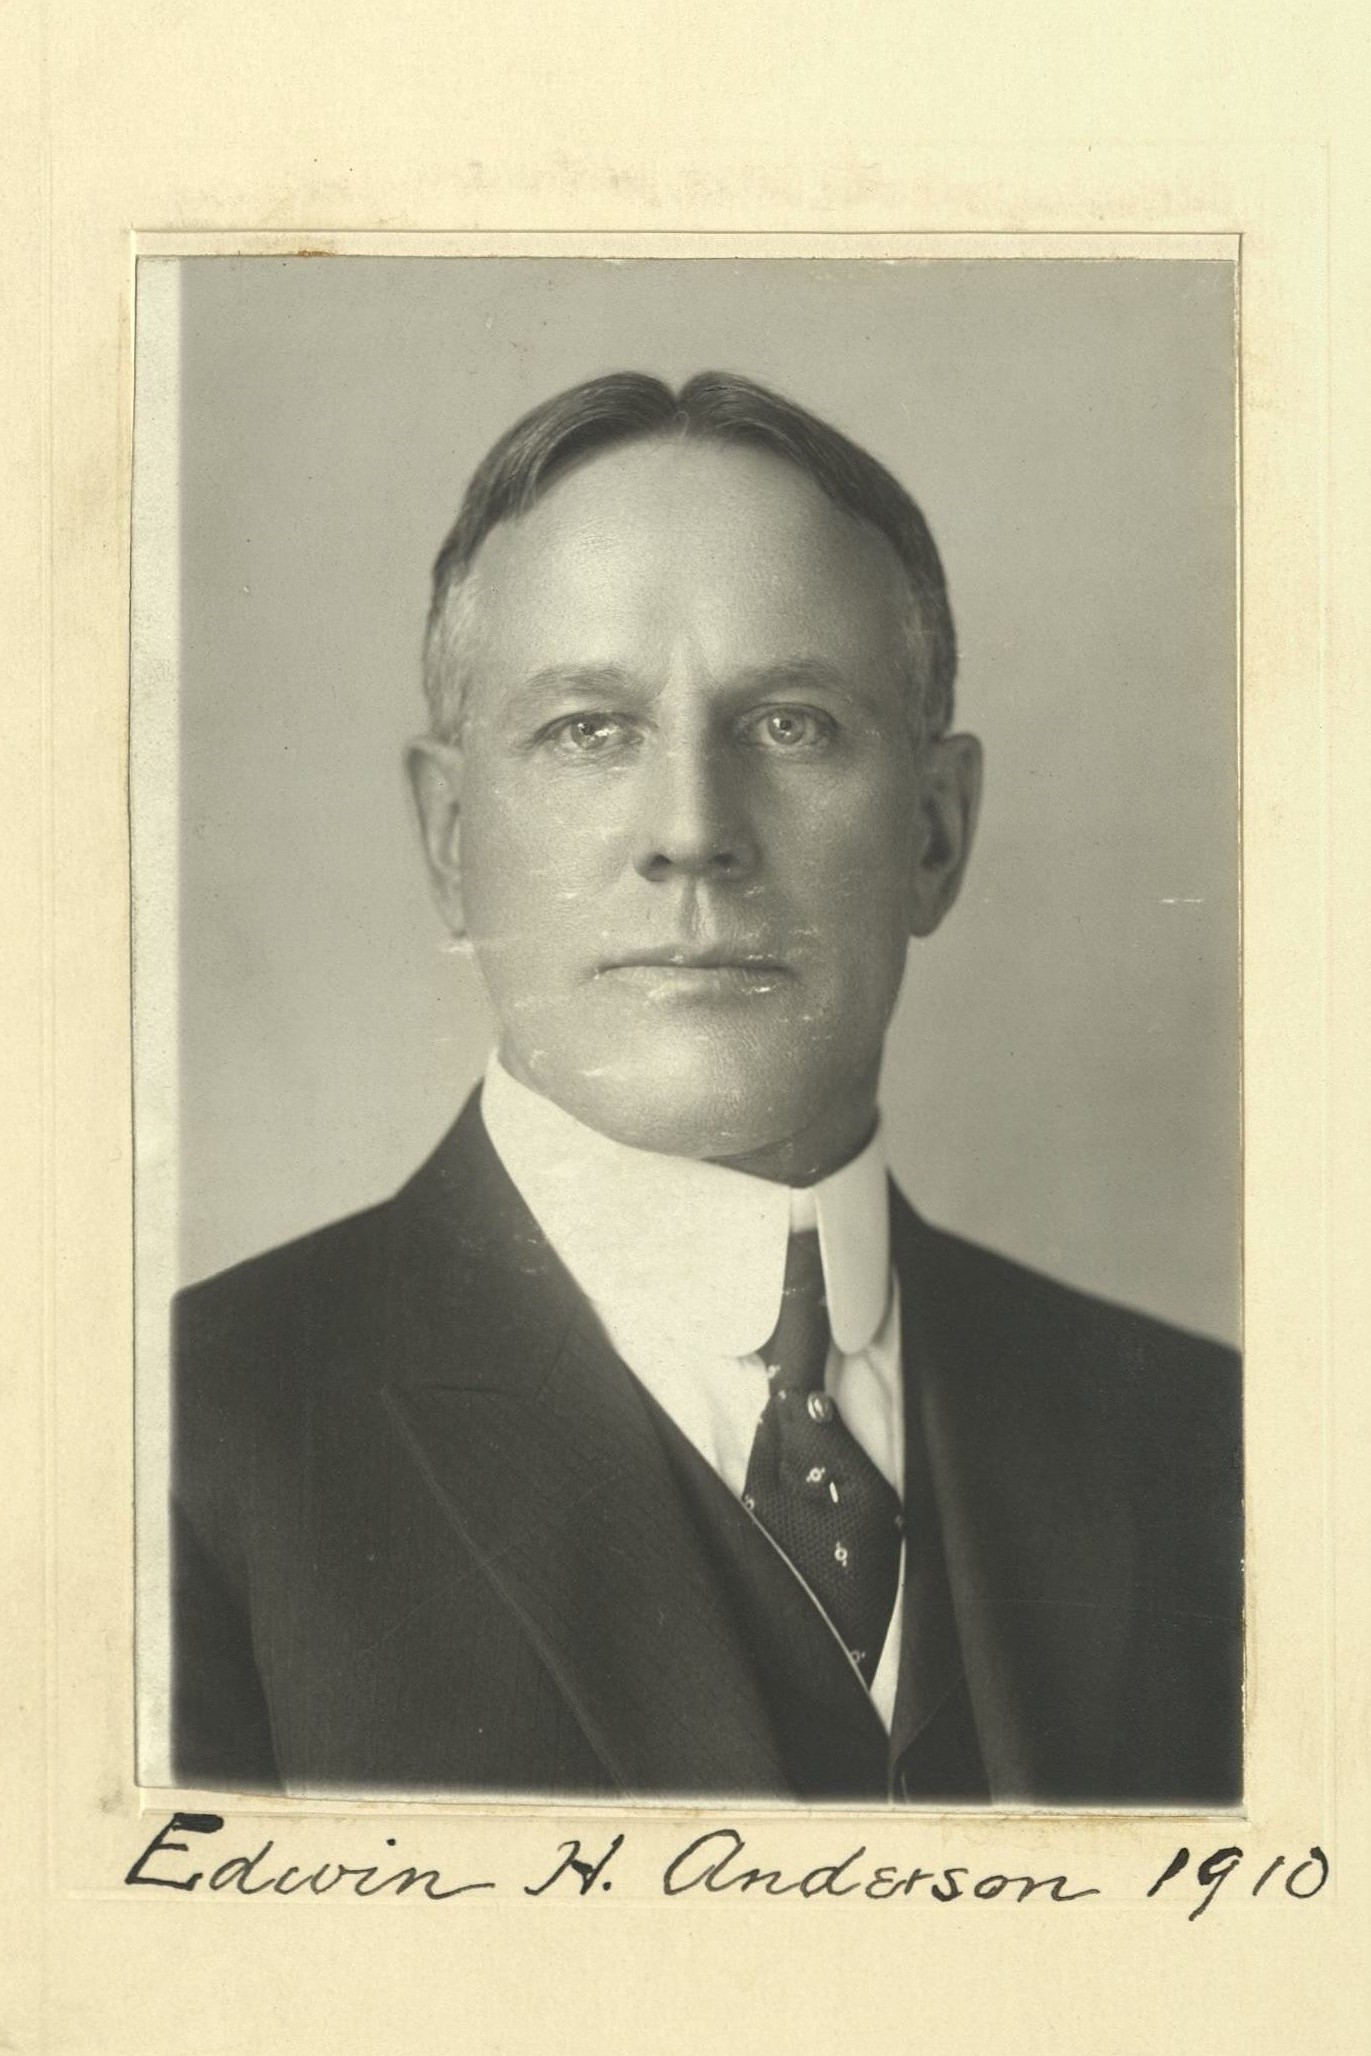 Member portrait of Edwin H. Anderson